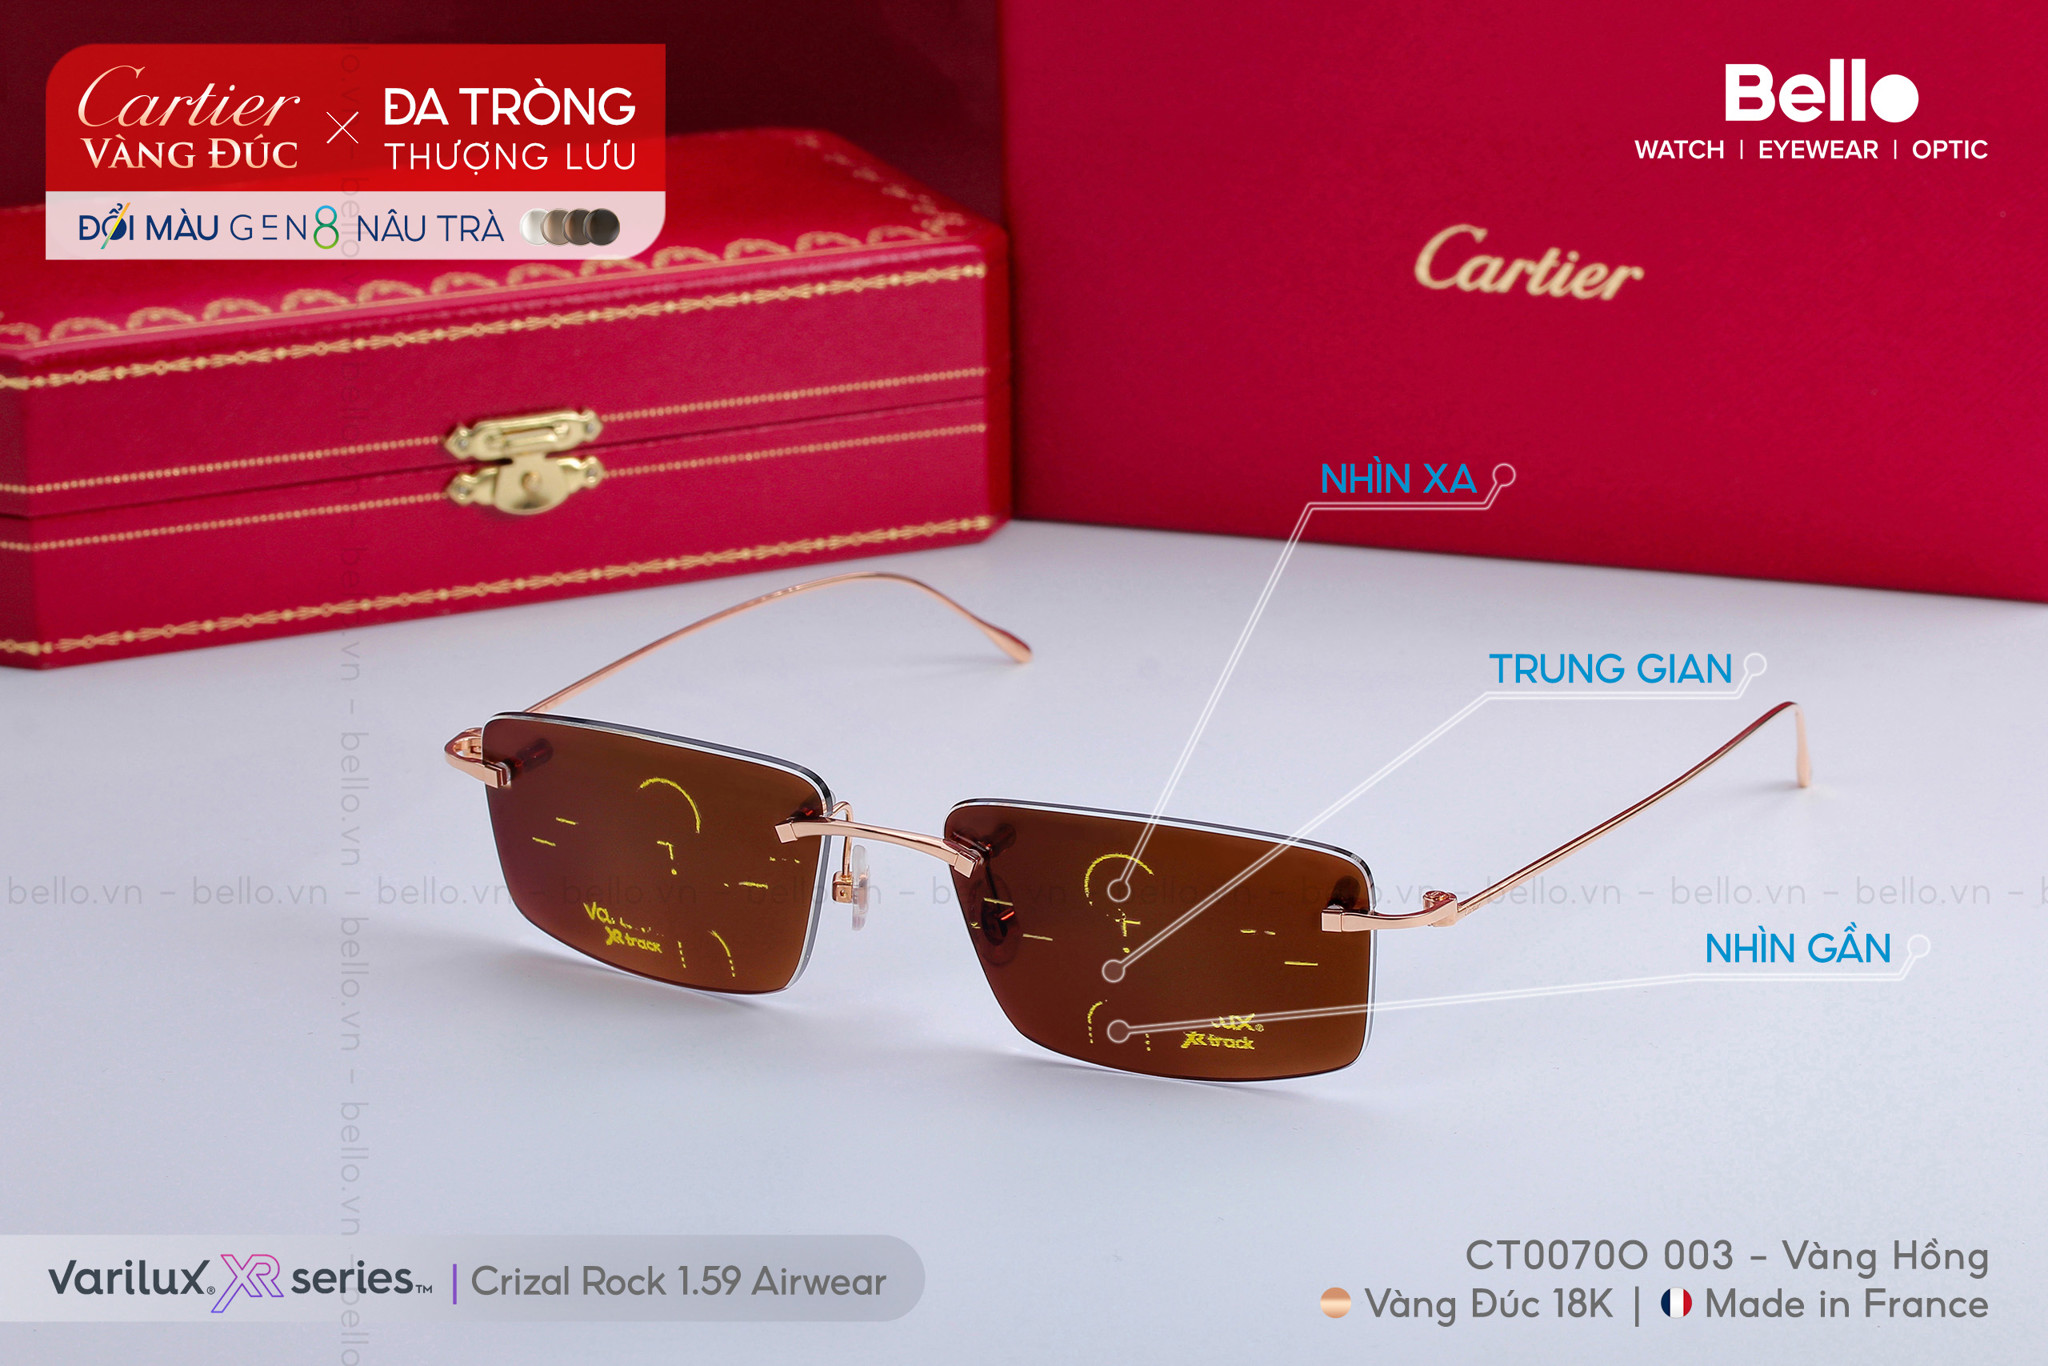 Kính Cartier vàng đúc 18K lắp đa tròng đổi màu Essilor Varilux XR Series